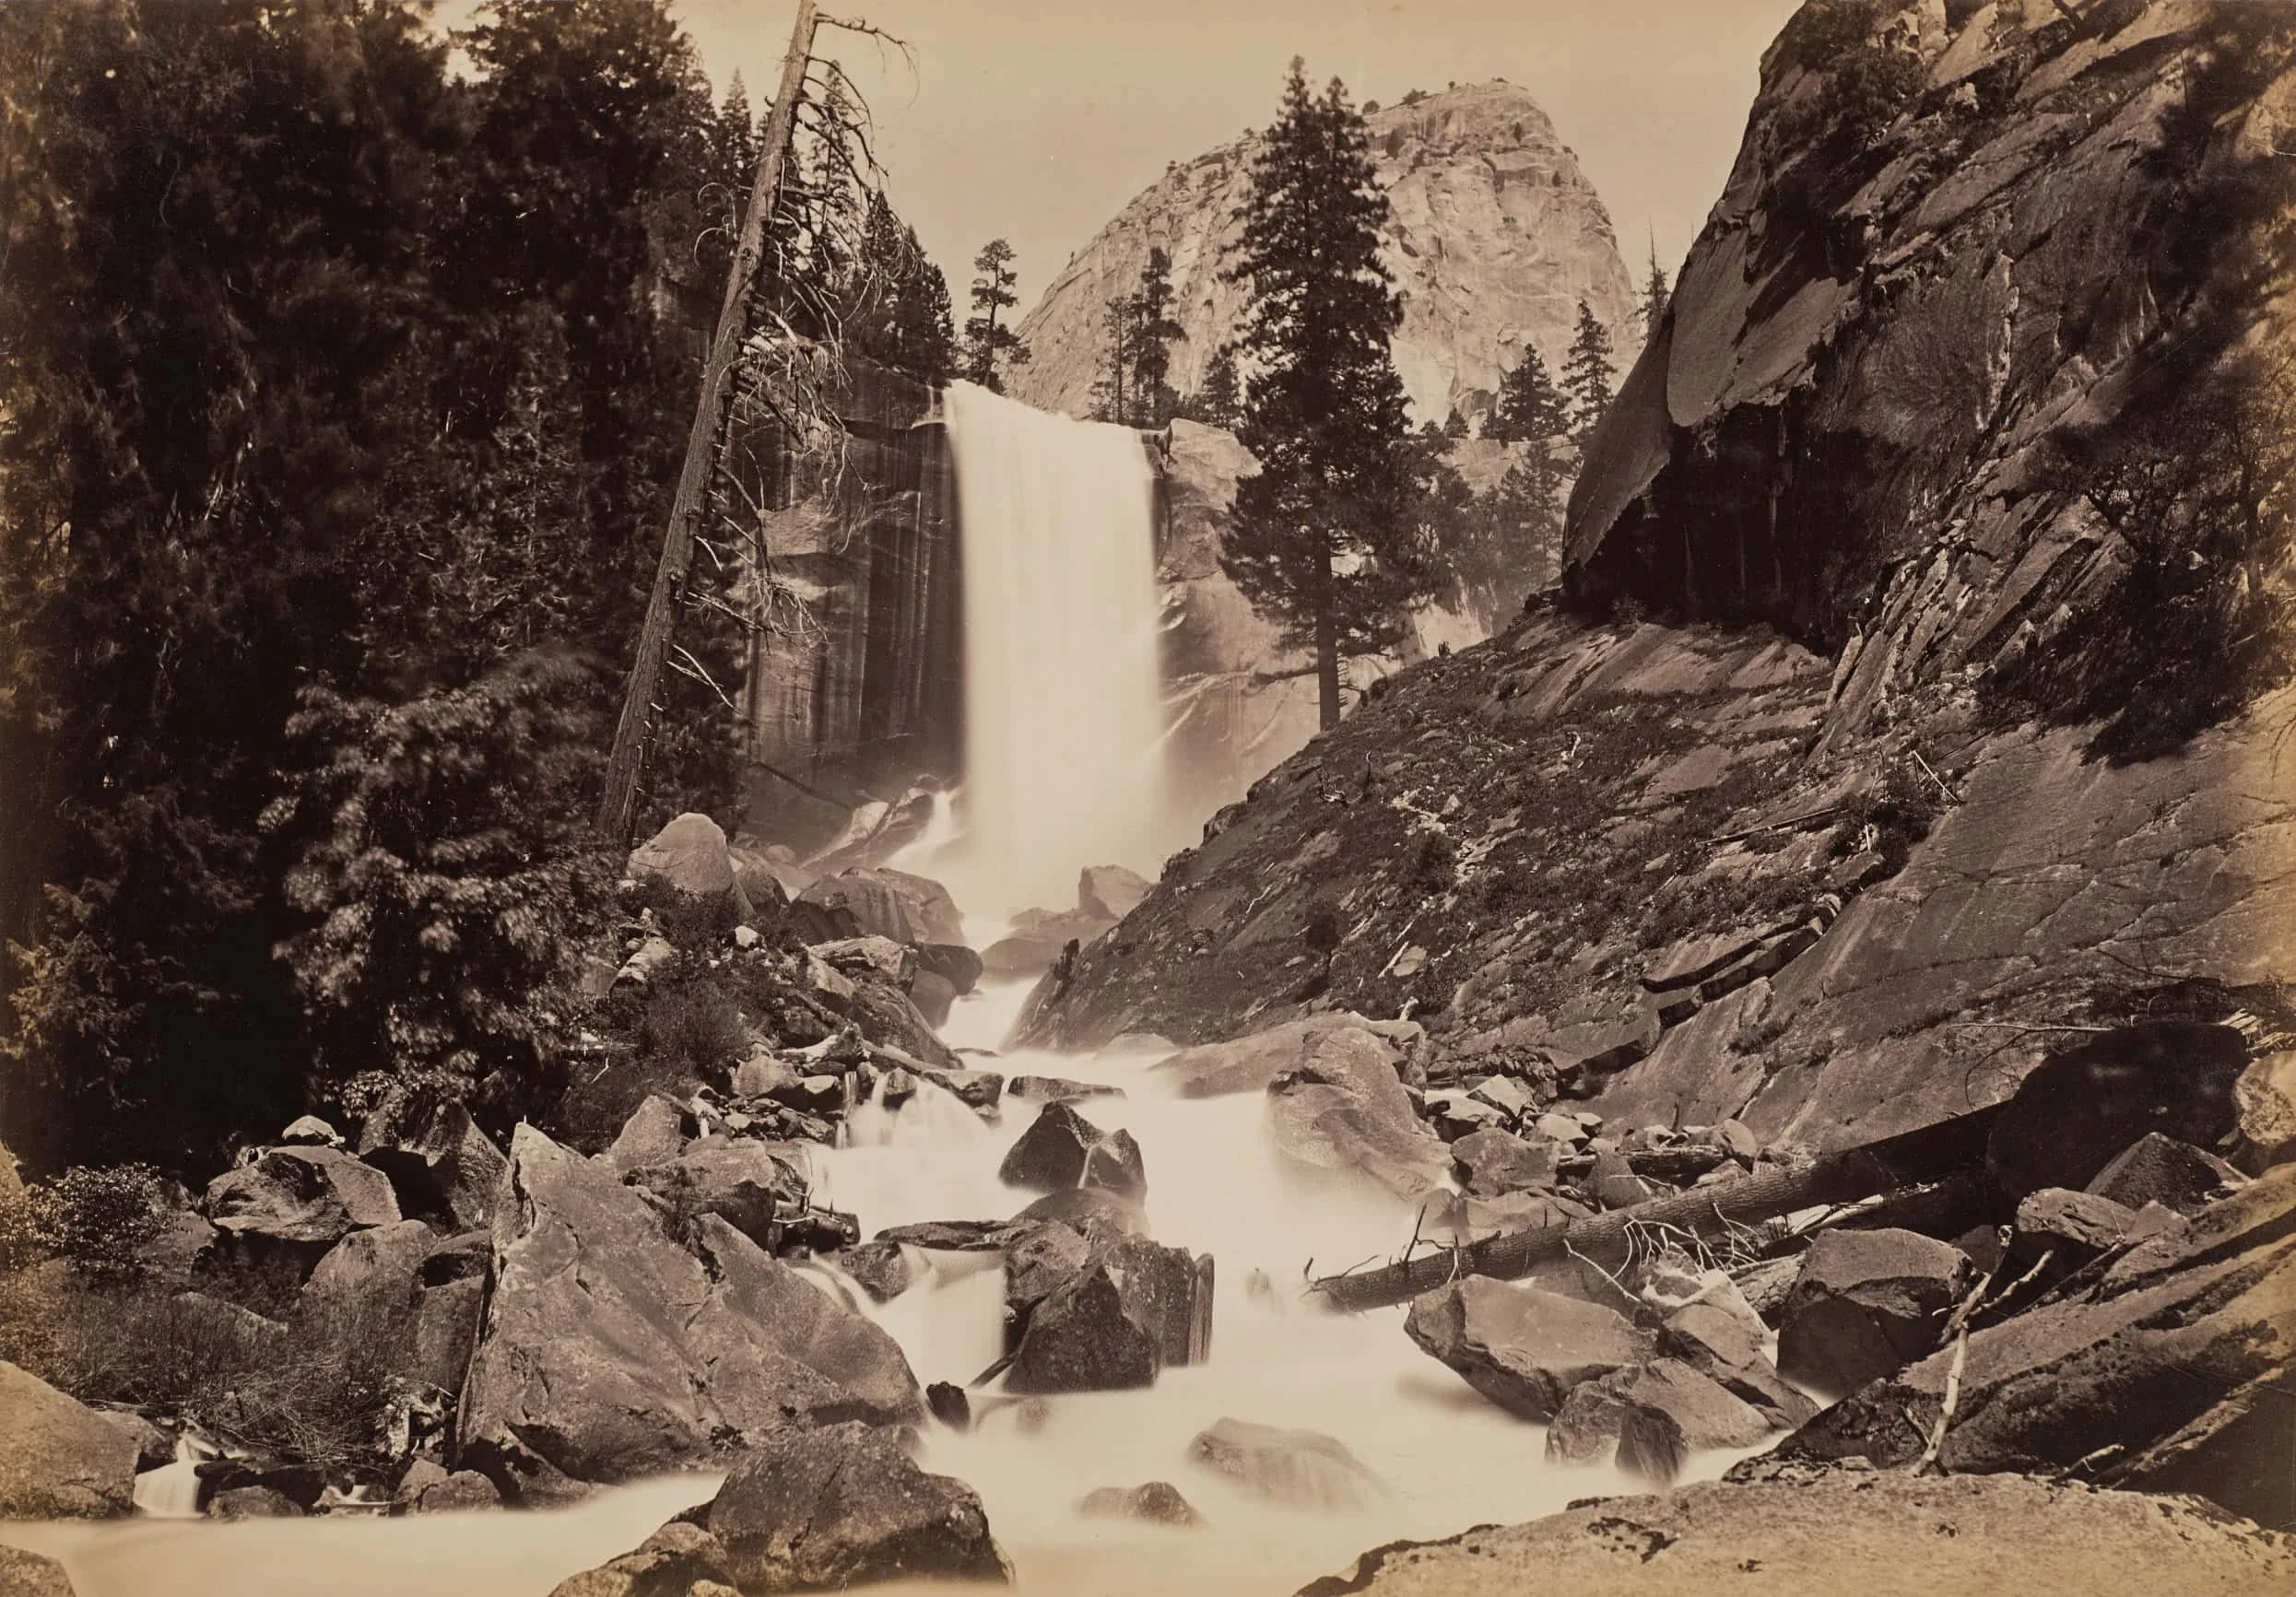 Architettura e paesaggio nella fotografia Carleton E. Watkins Vernal Falls 300 Feet Yosemite Valley